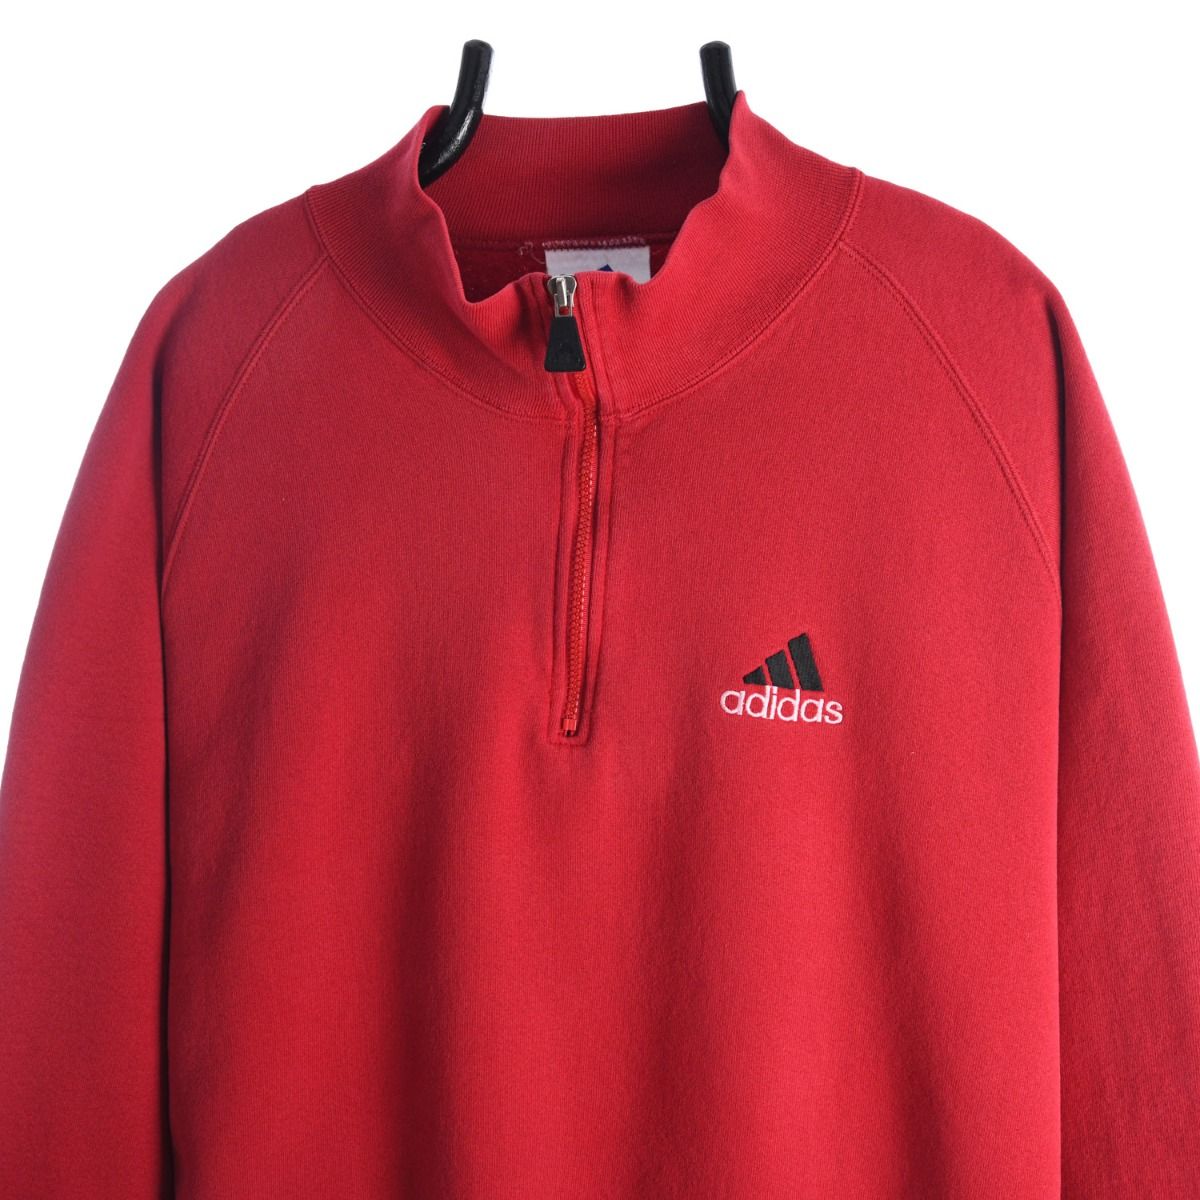 Adidas 1990s Quarter-Zip Sweatshirt